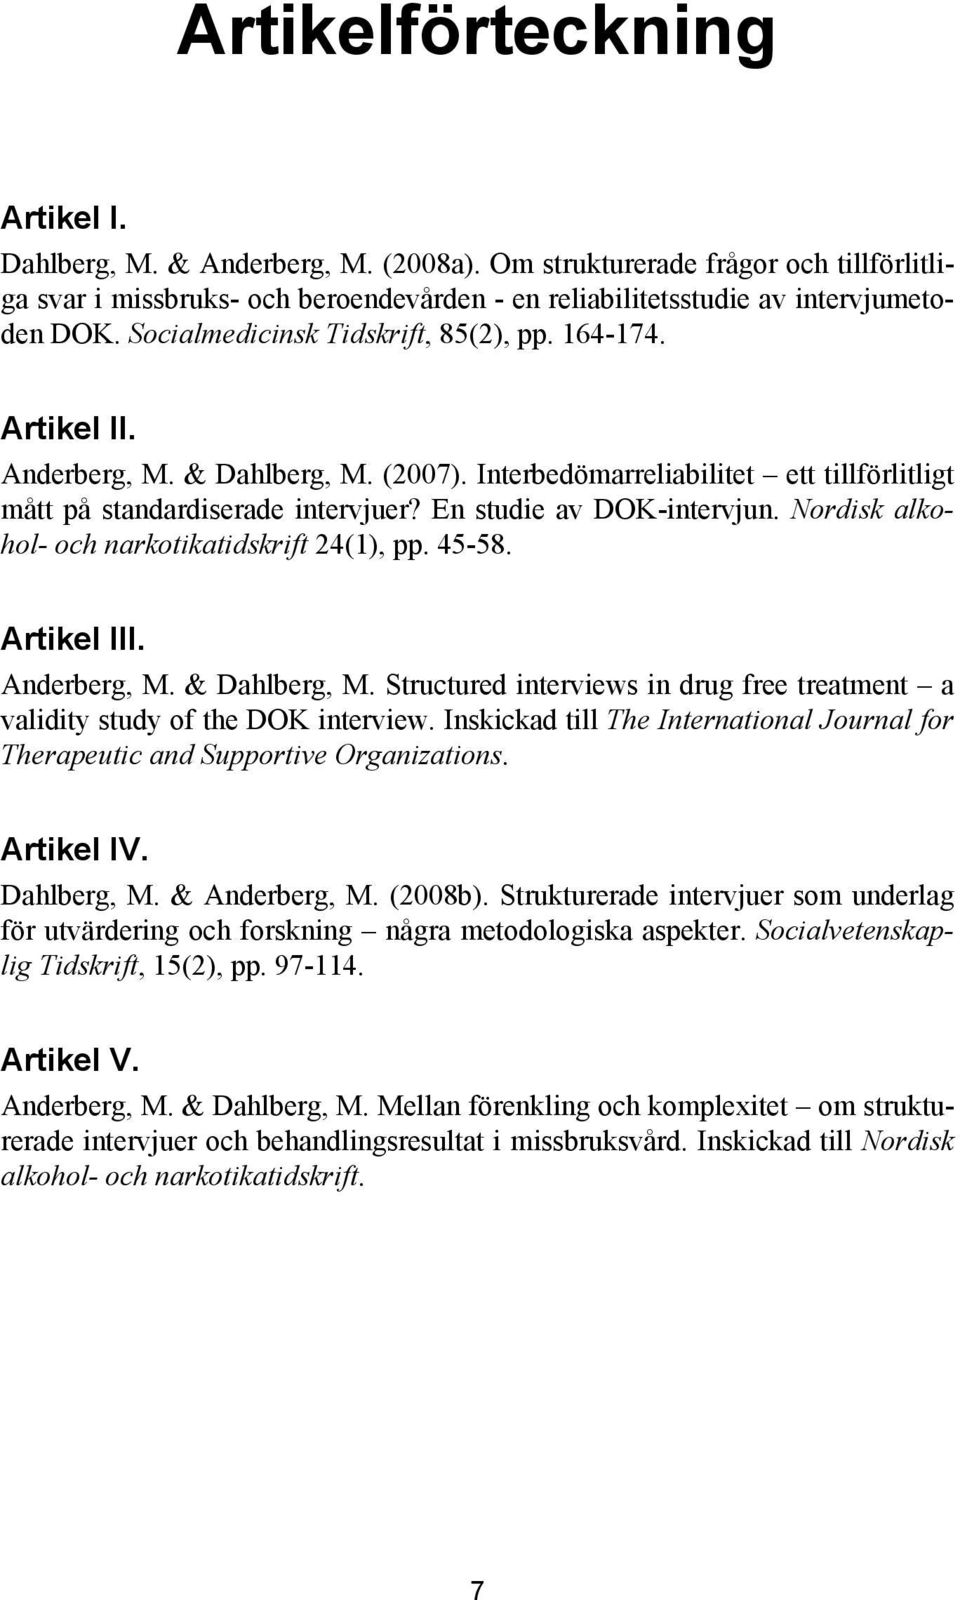 En studie av DOK-intervjun. Nordisk alkohol- och narkotikatidskrift 24(1), pp. 45-58. Artikel III. Anderberg, M. & Dahlberg, M.